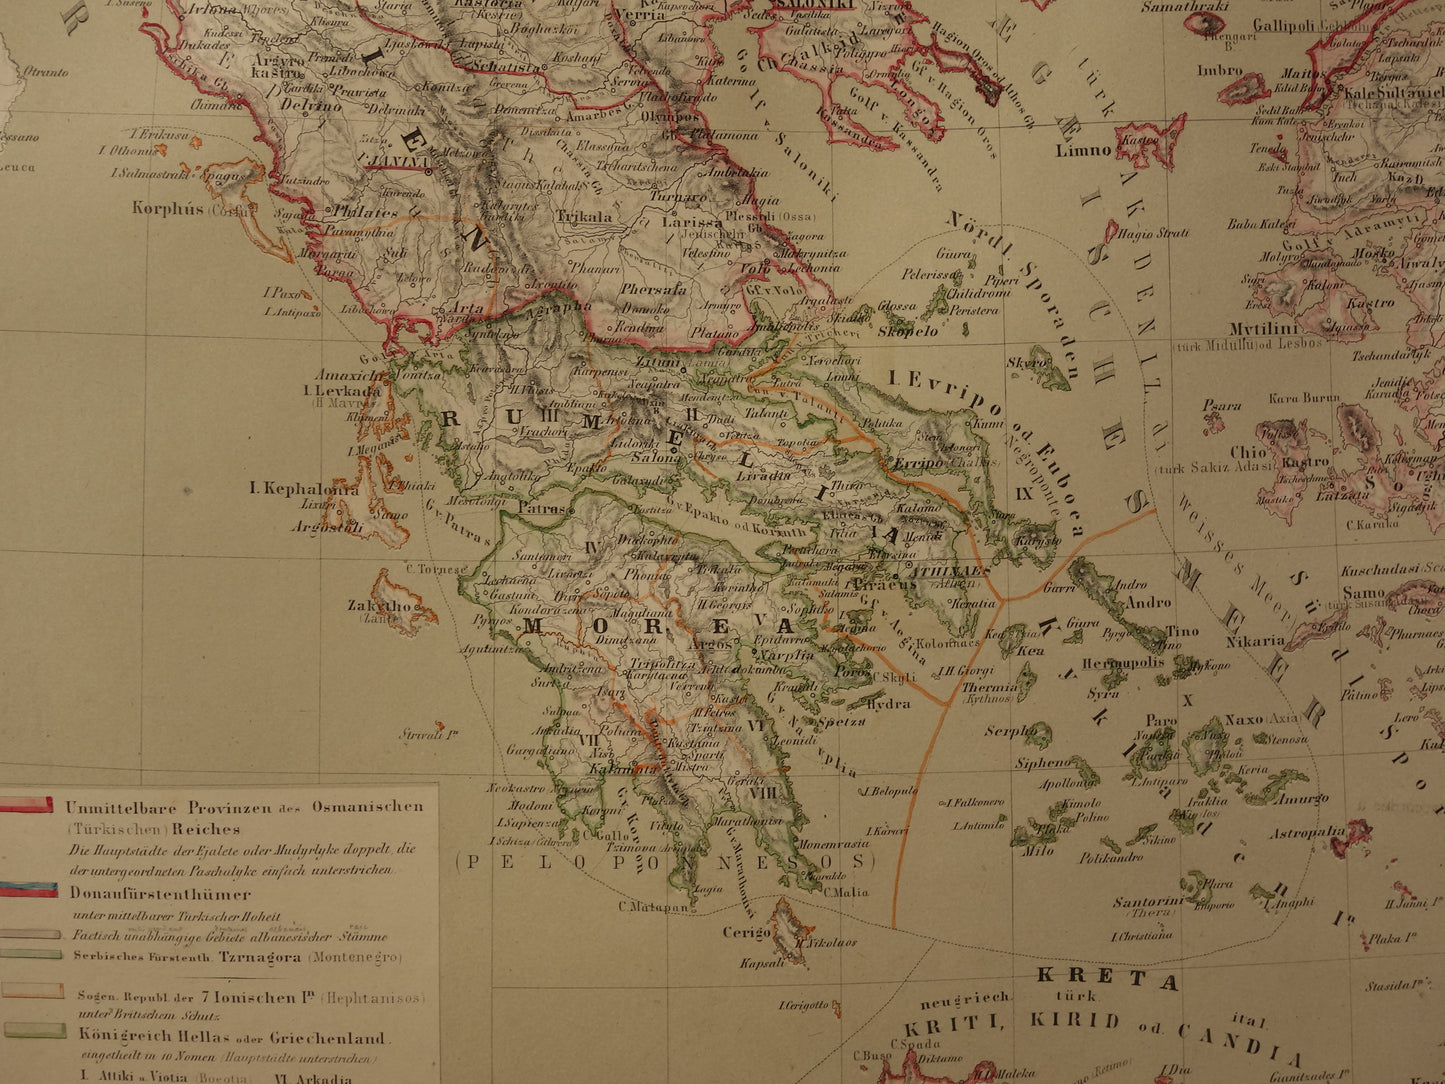 Grote Oude landkaart van de Balkan in 1856 met schade - Antieke kaart Europees Turkije Servië Griekenland handgekleurde vintage landkaarten